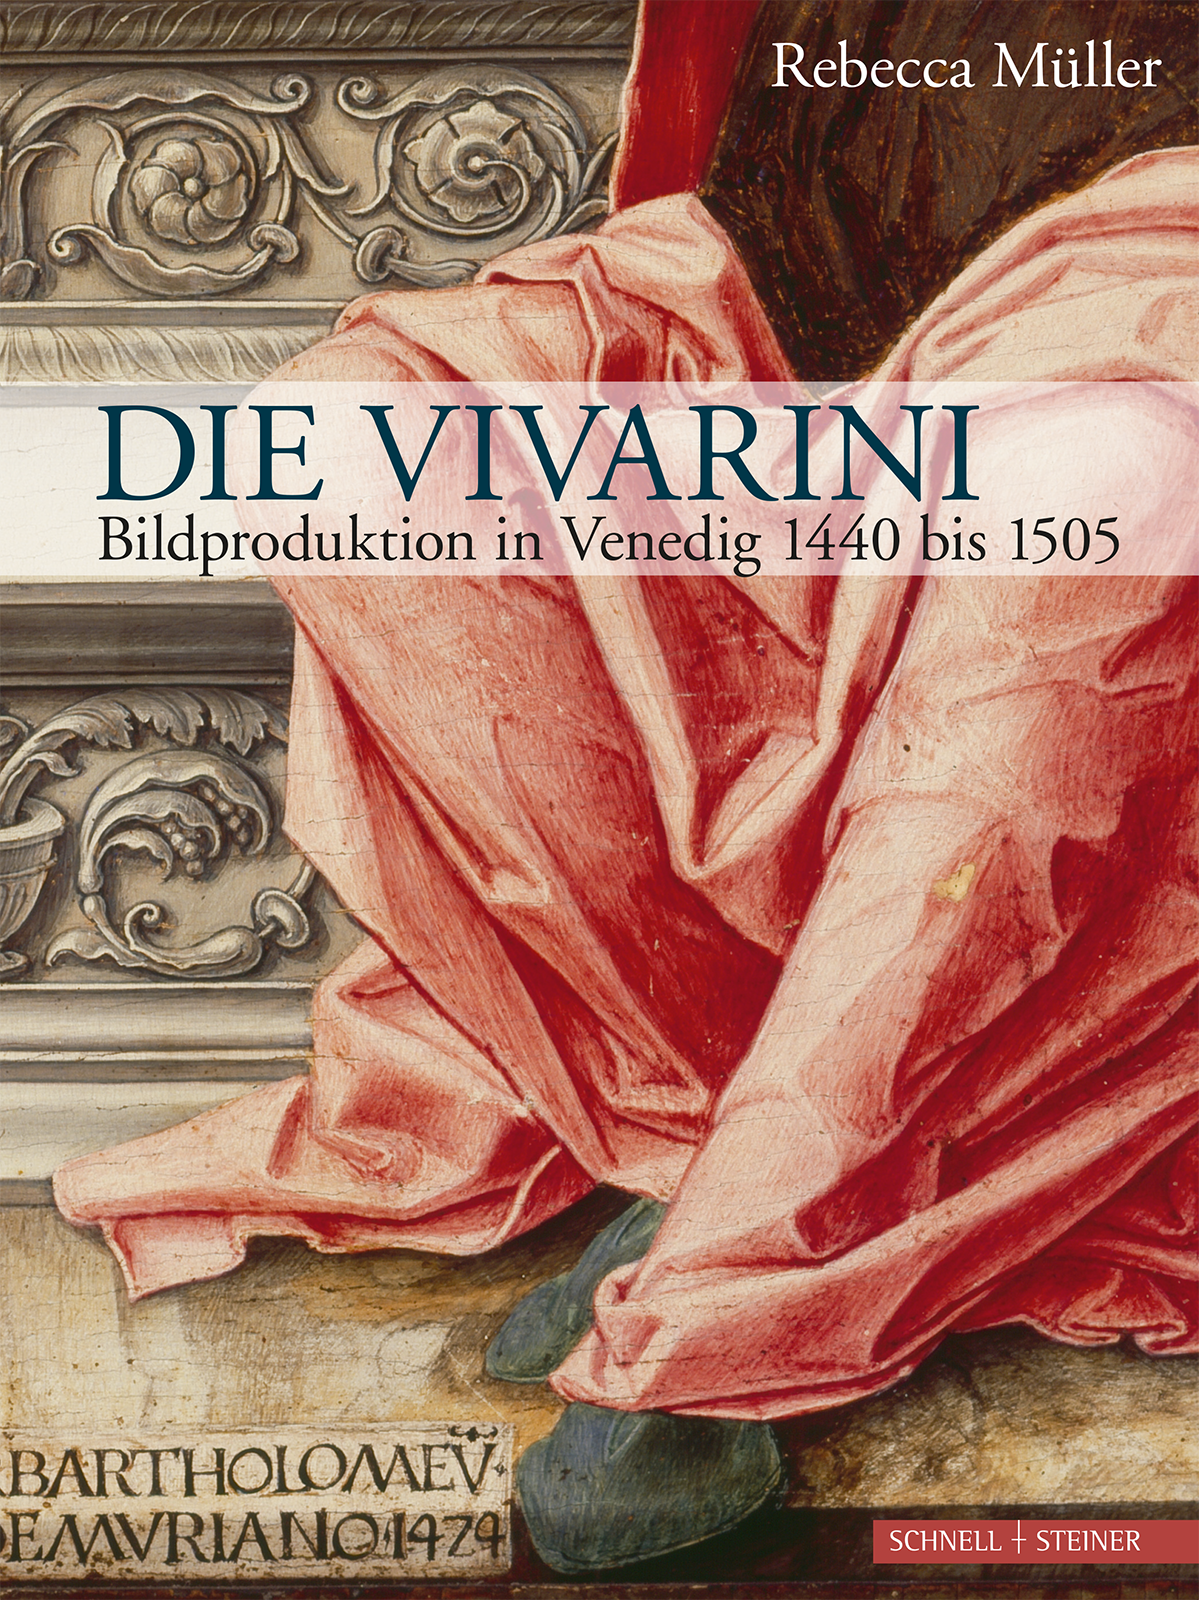 Rebecca Müller: Die Vivarini. Bildproduktion in Venedig 1440 bis 1505